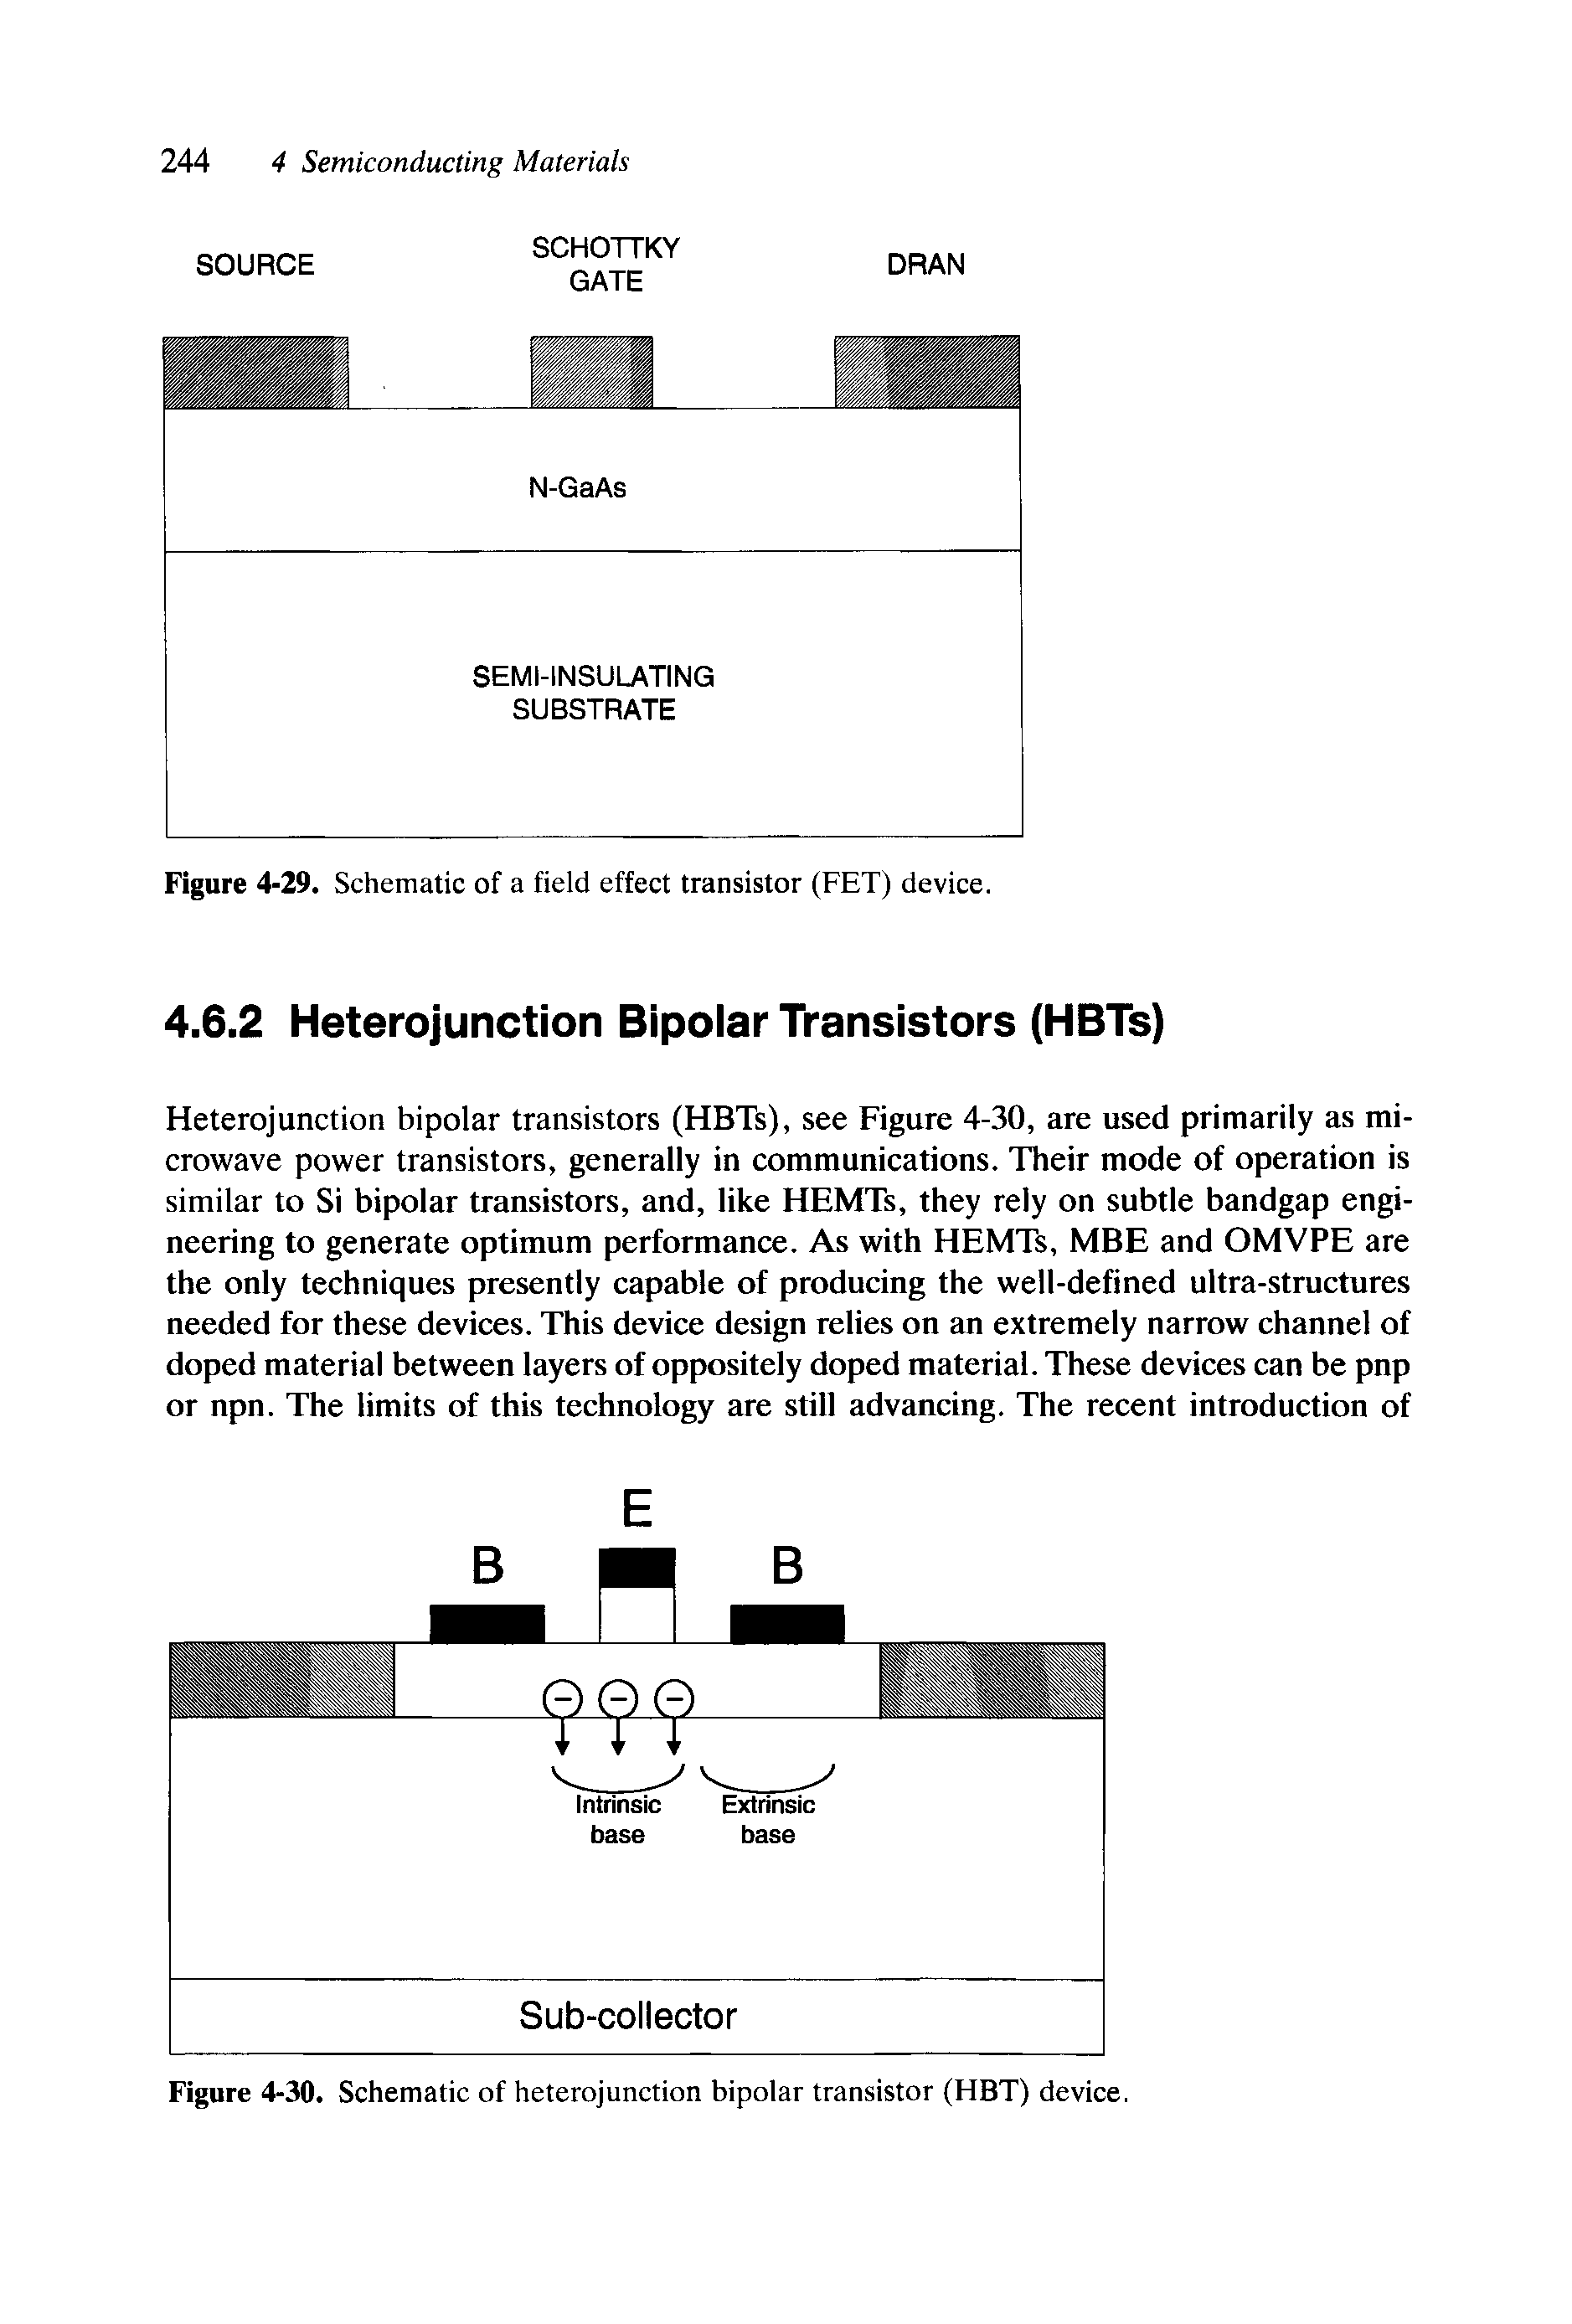 Figure 4-30. Schematic of heterojunction bipolar transistor (HBT) device.